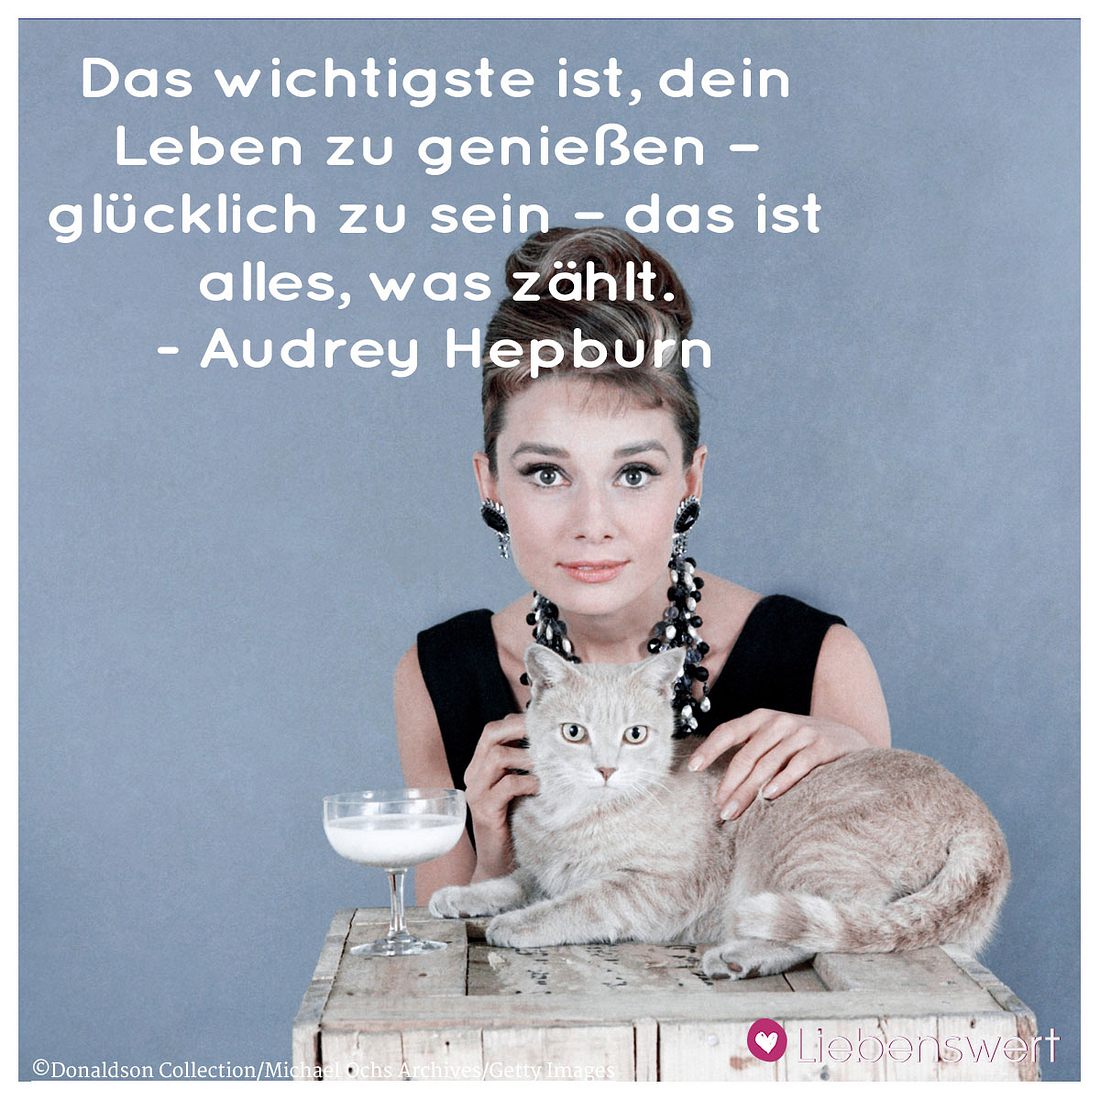 Audrey Hepburn war eine echte Ikone.